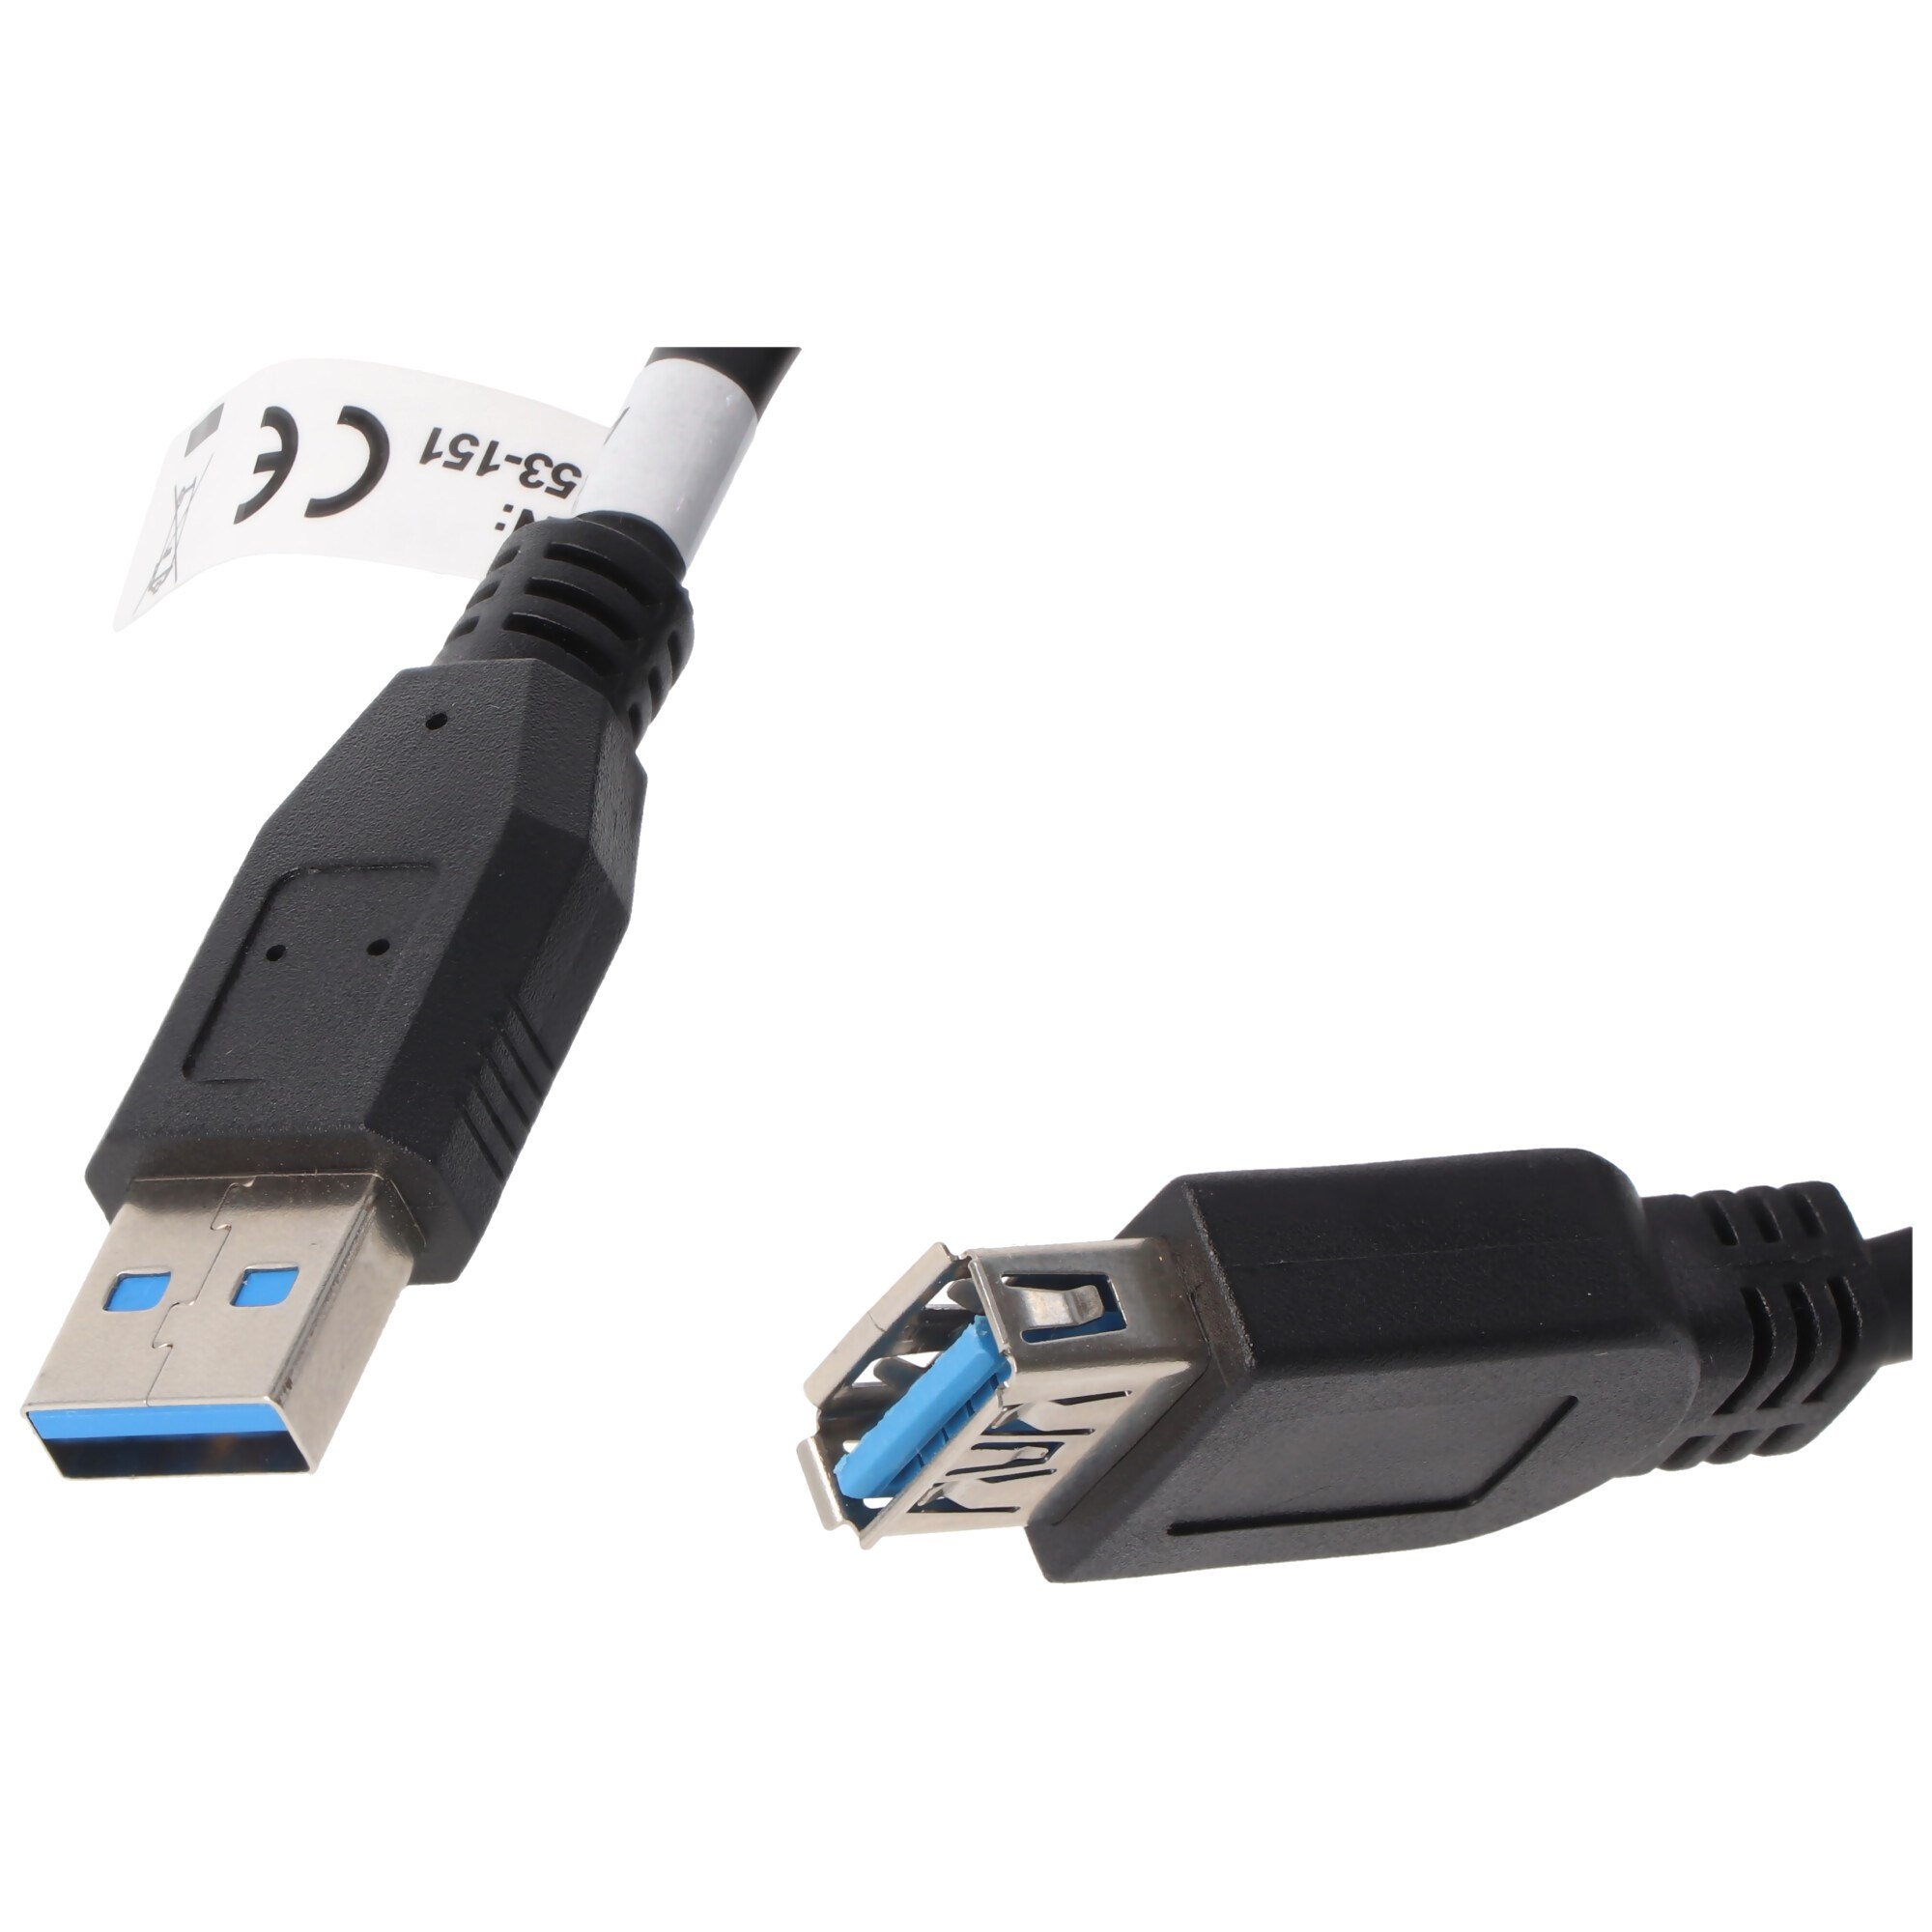 USB 3.0 SuperSpeed uzatma kablosu, siyah, uzunluk 3 metre, USB 2.0'dan  önemli ölçüde daha hızlı